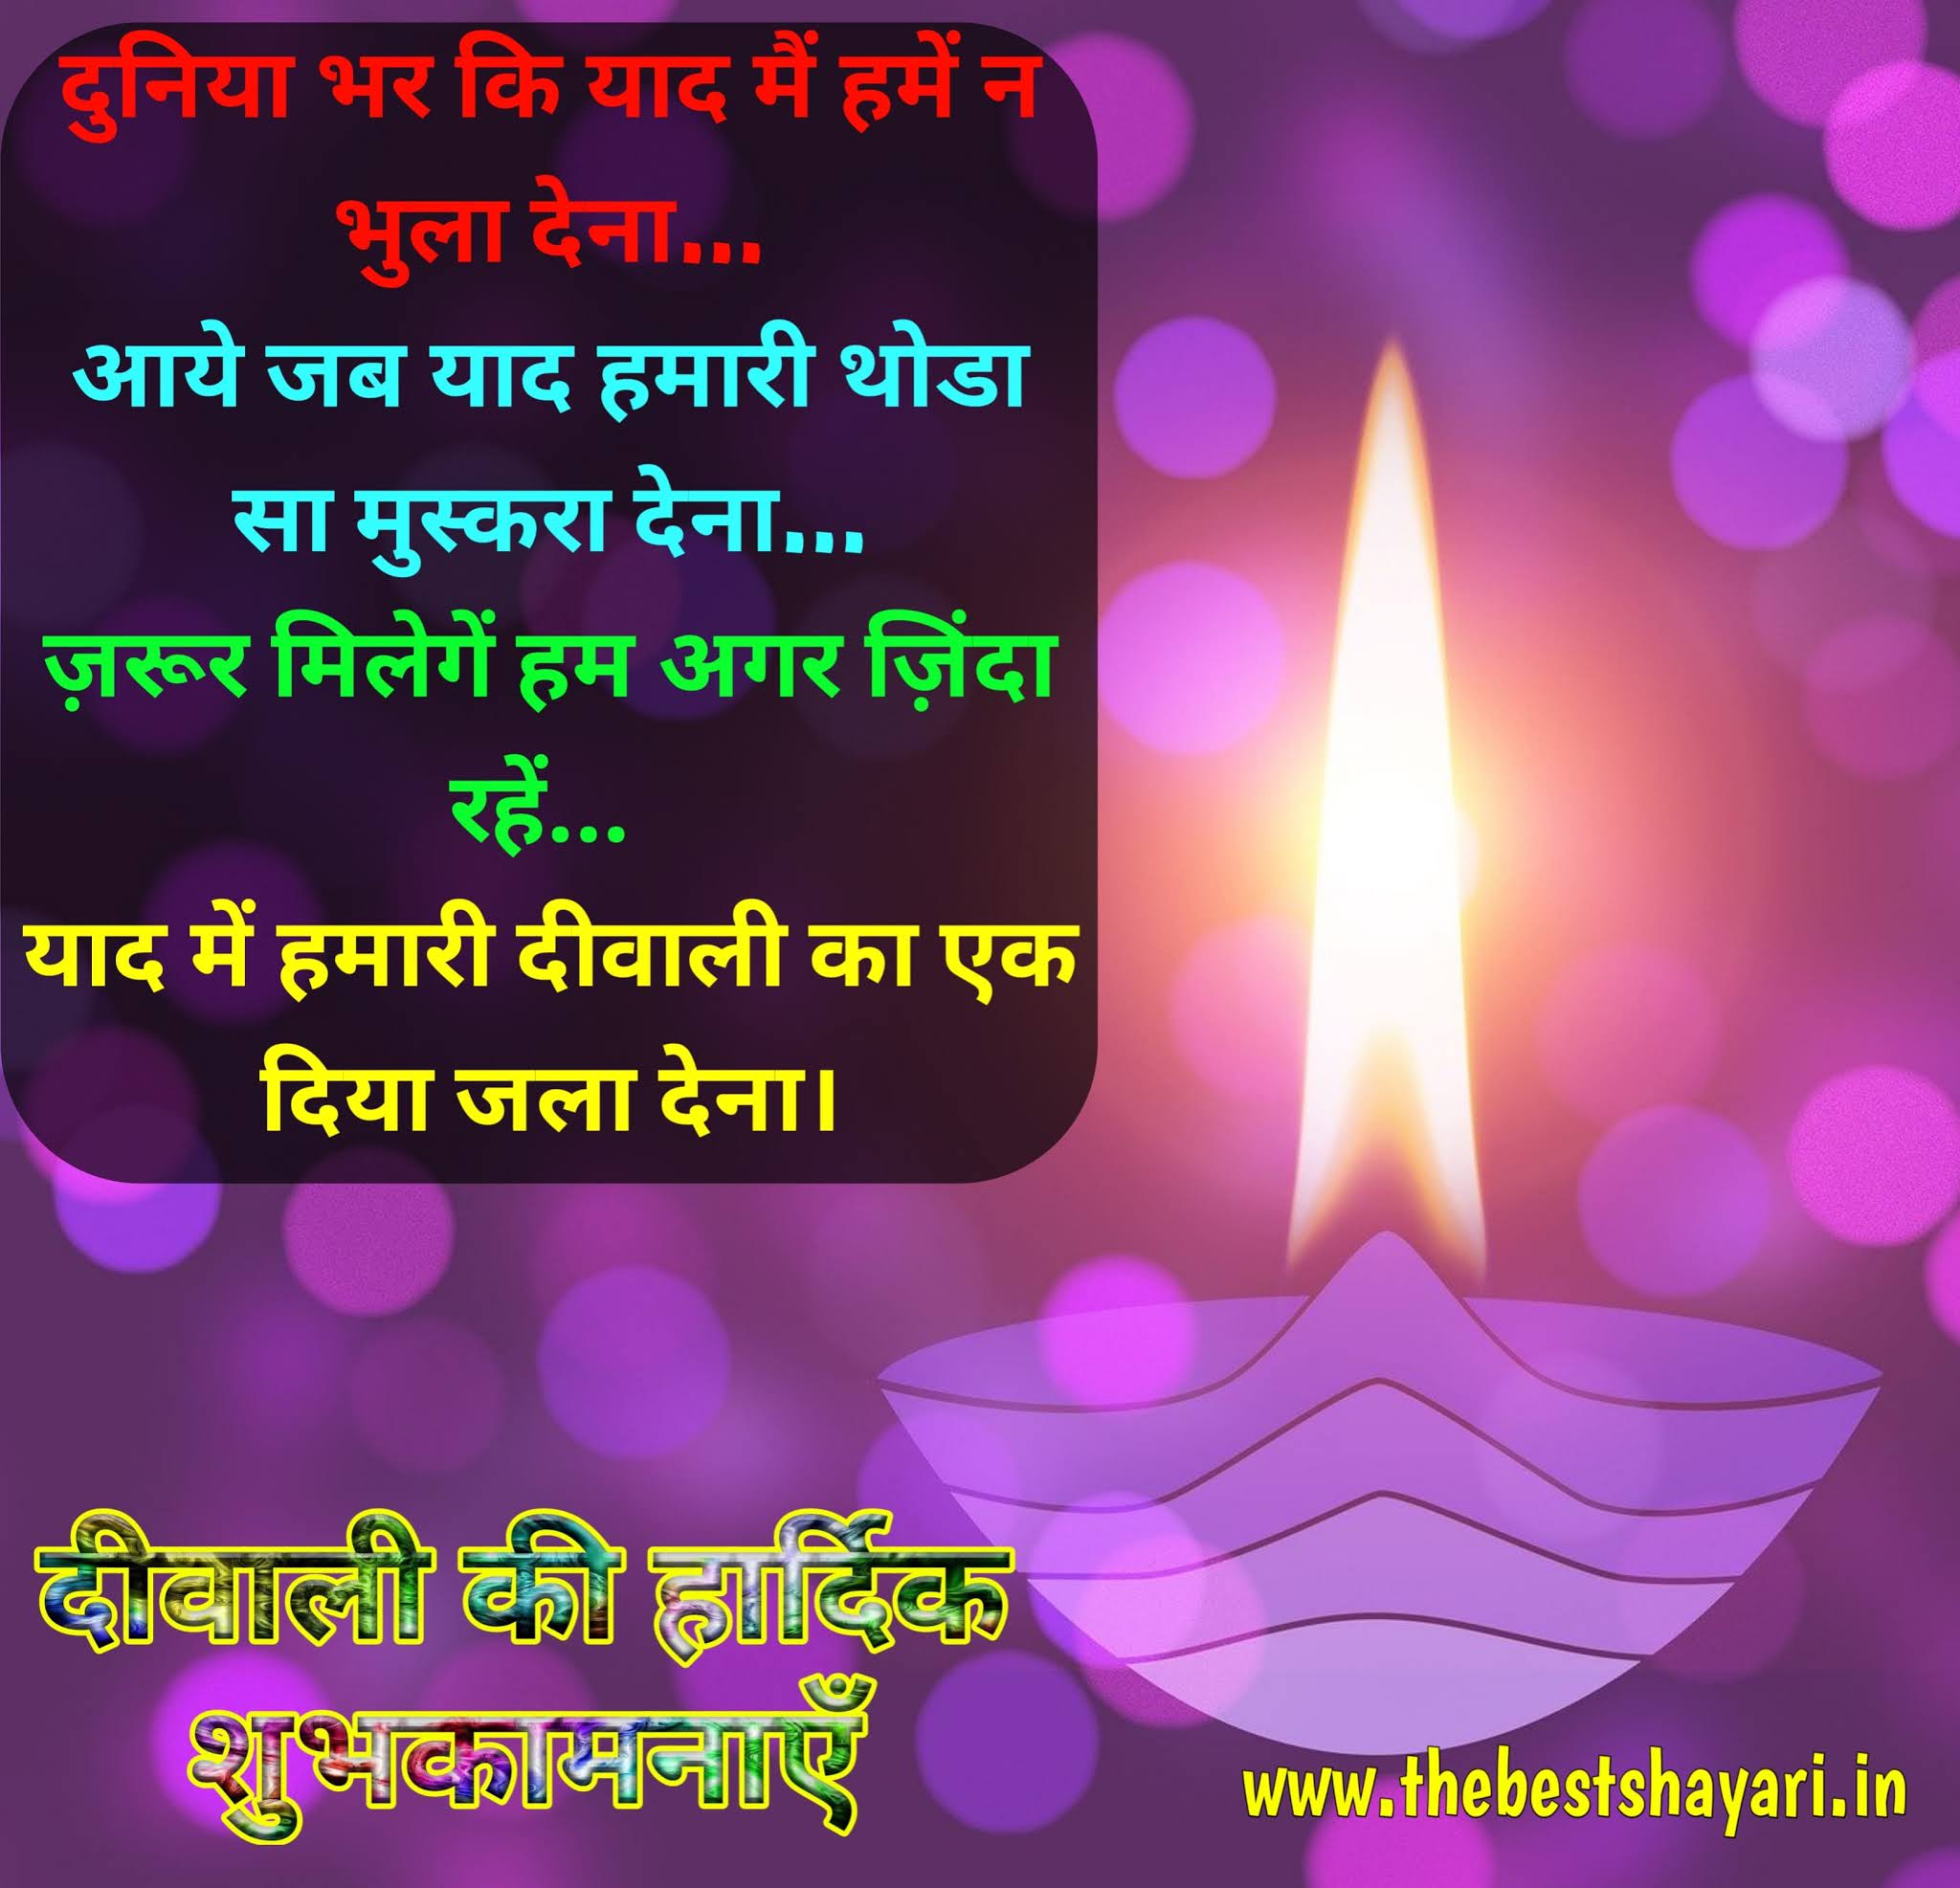 happy Diwali wishes in Hindi font